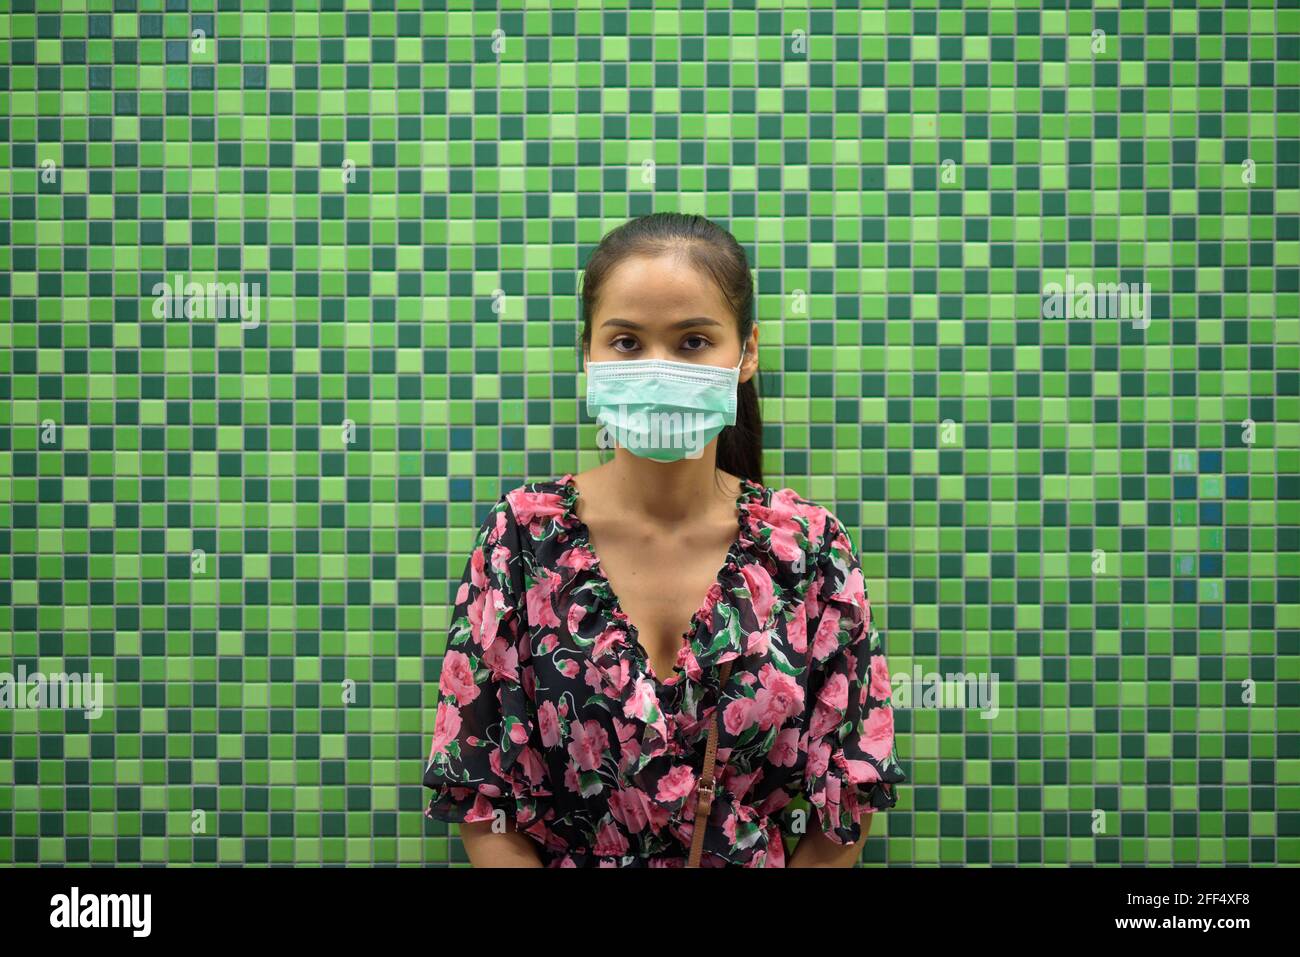 Ritratto di donna che indossa maschera per la protezione contro il coronavirus Covid-19 di notte contro parete colorata con spazio di copia Foto Stock